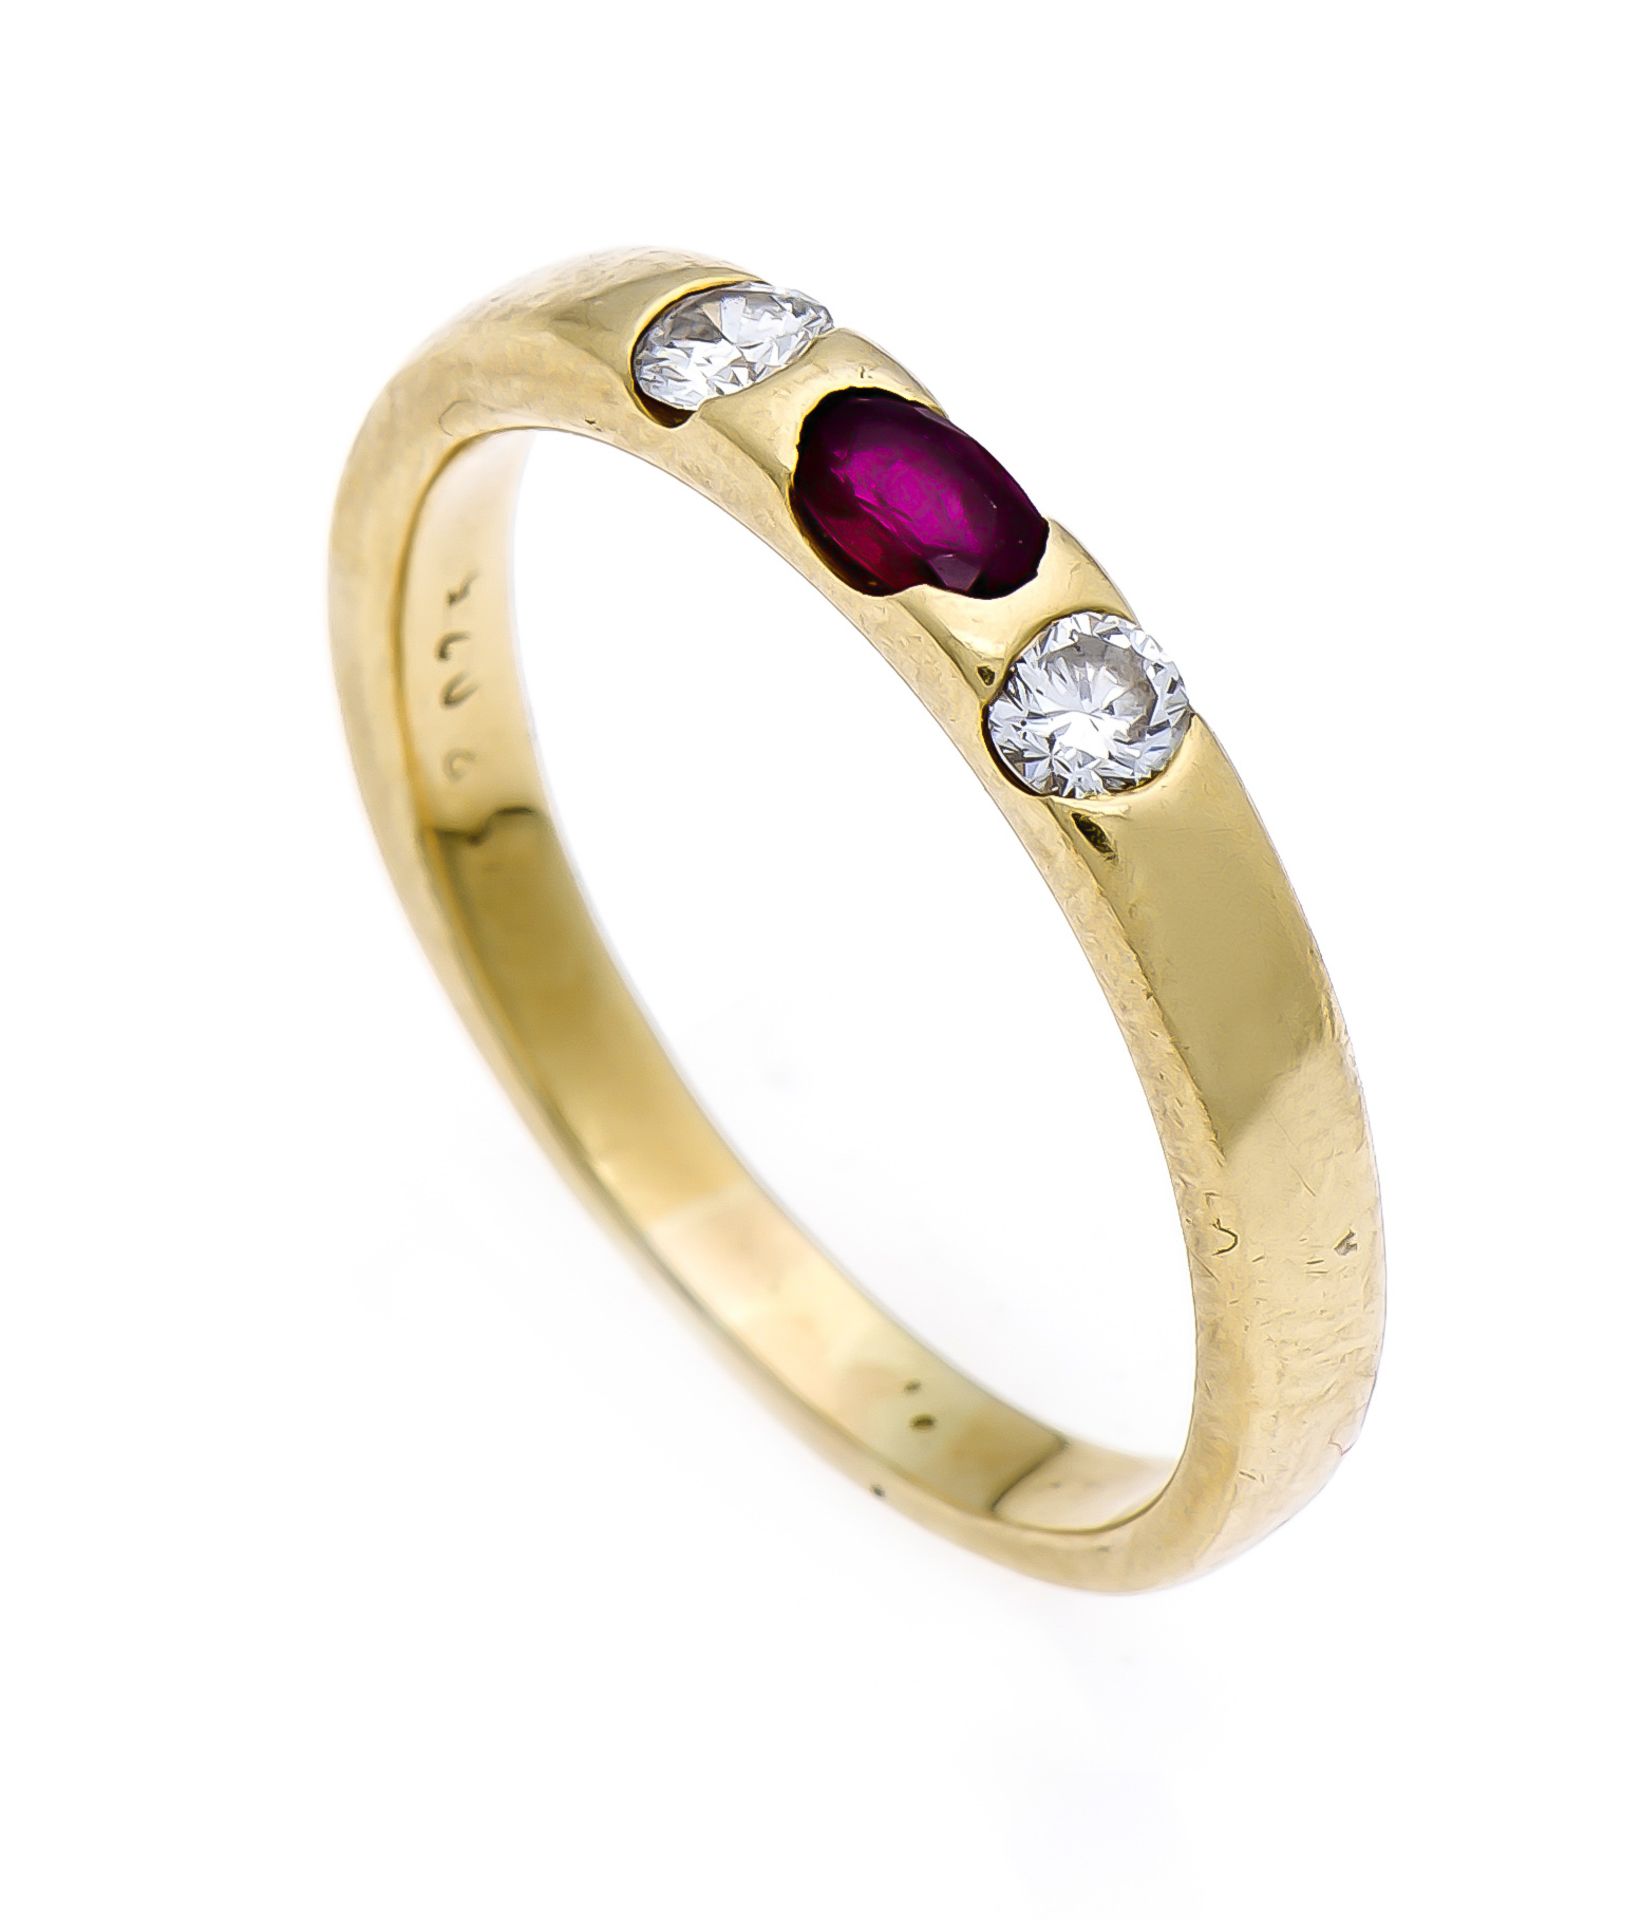 Rubin-Brillant-Ring GG 750/000 mit einem oval fac. Rubin 5 mm in sehr guter Farbe und 2Brillanten,